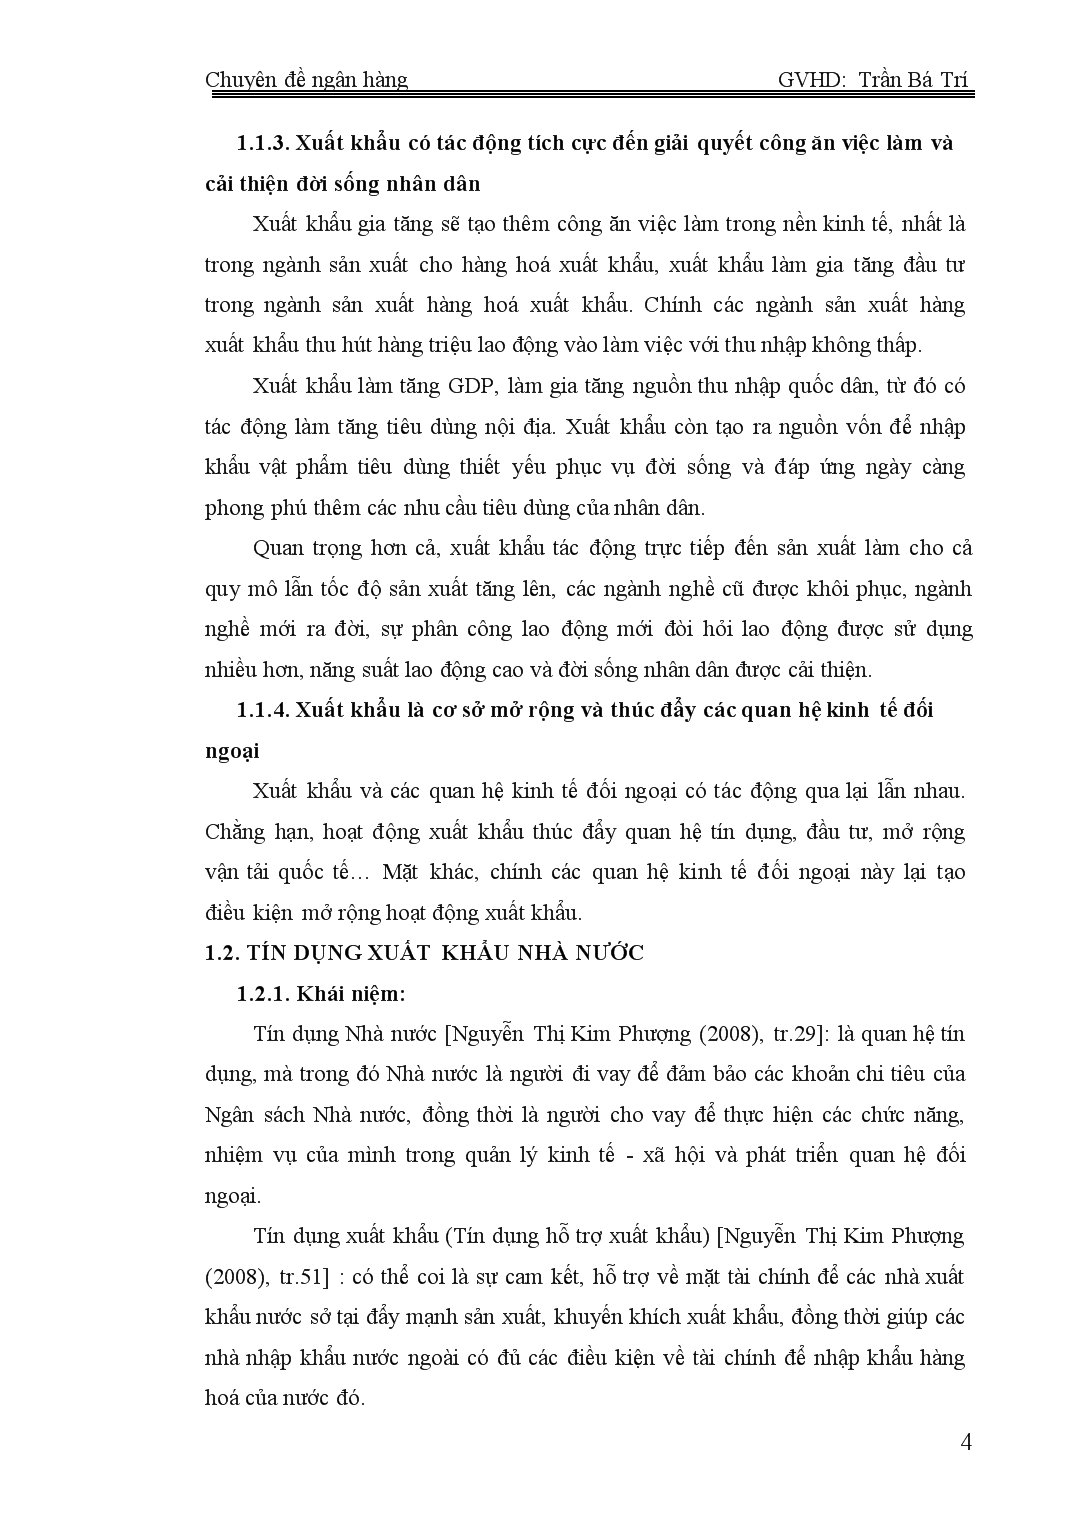 Chuyên đề Đánh giá thực trạng hoạt động tín dụng xuất khẩu tại ngân hàng phát triển Việt Nam trang 4